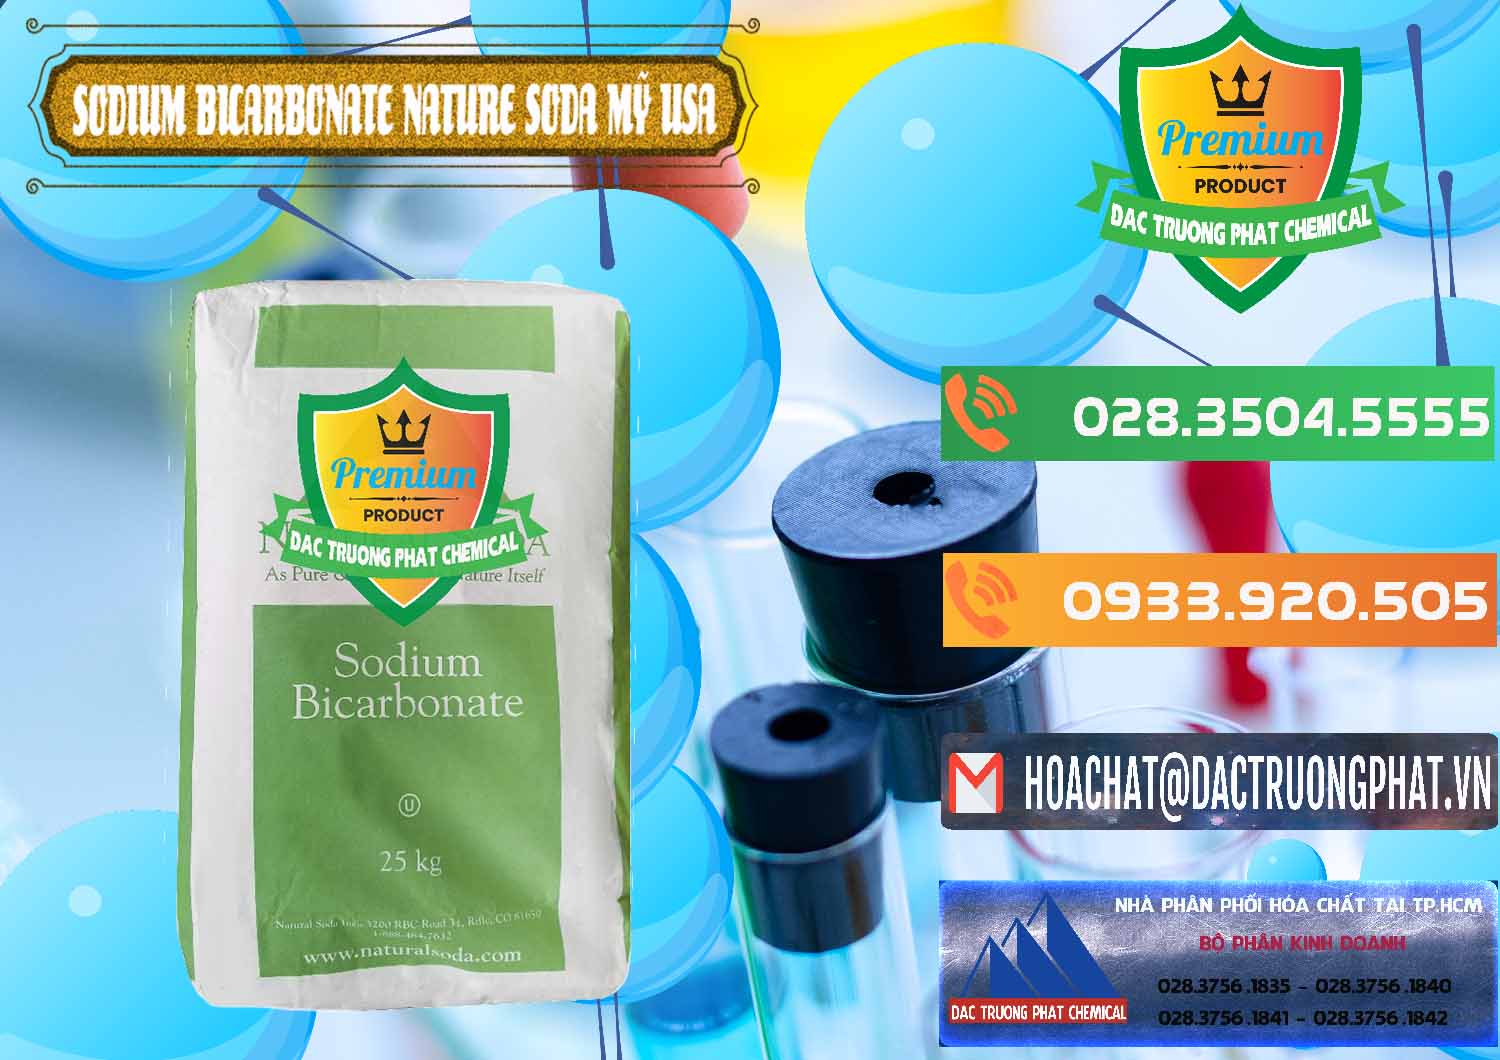 Chuyên cung cấp & bán Sodium Bicarbonate – Bicar NaHCO3 Food Grade Nature Soda Mỹ USA - 0256 - Cty chuyên bán - cung cấp hóa chất tại TP.HCM - hoachatxulynuoc.com.vn